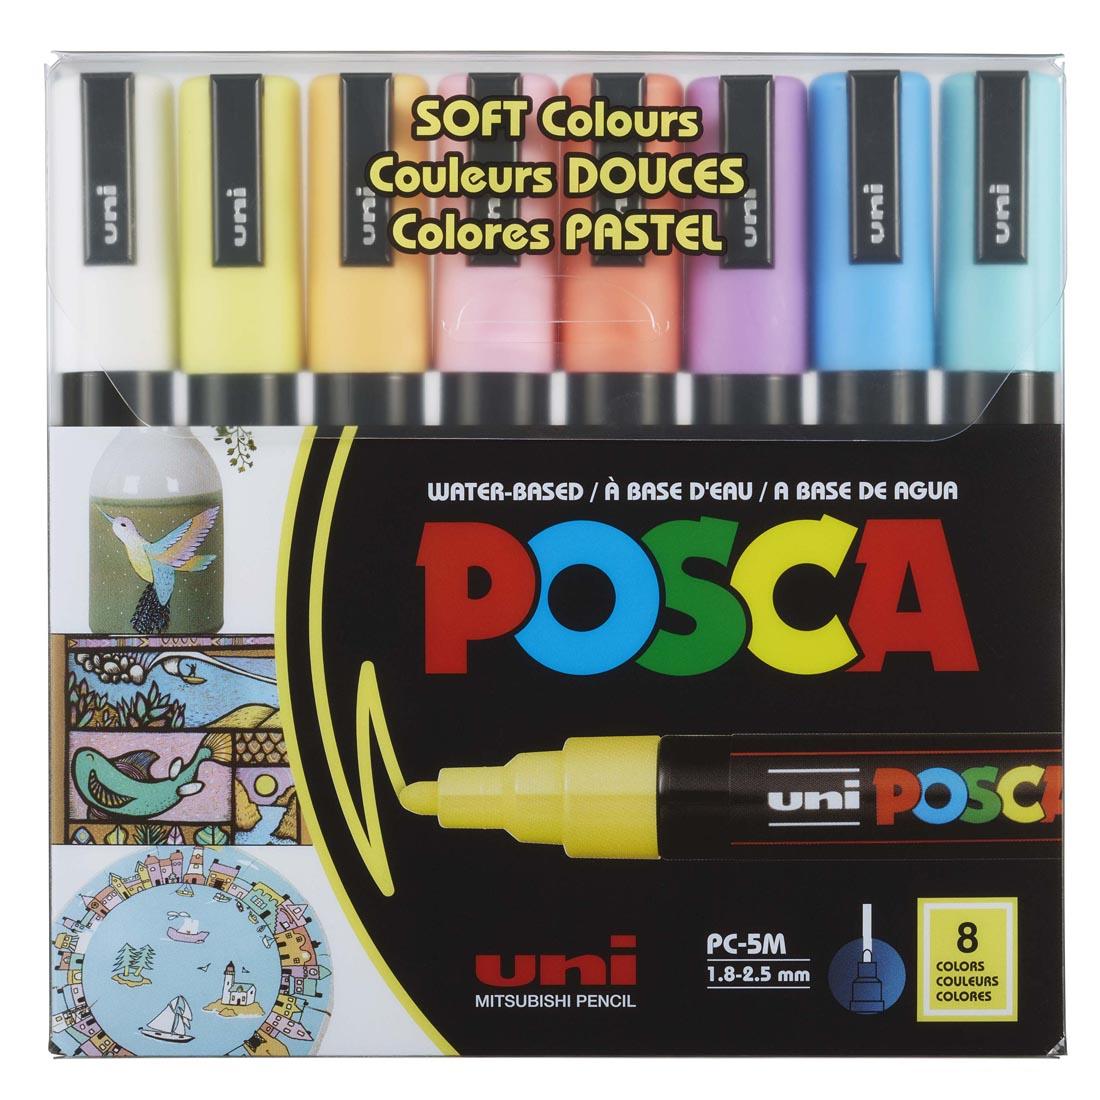 Posca Medium Point 8-Color Soft Colors Paint Marker Set